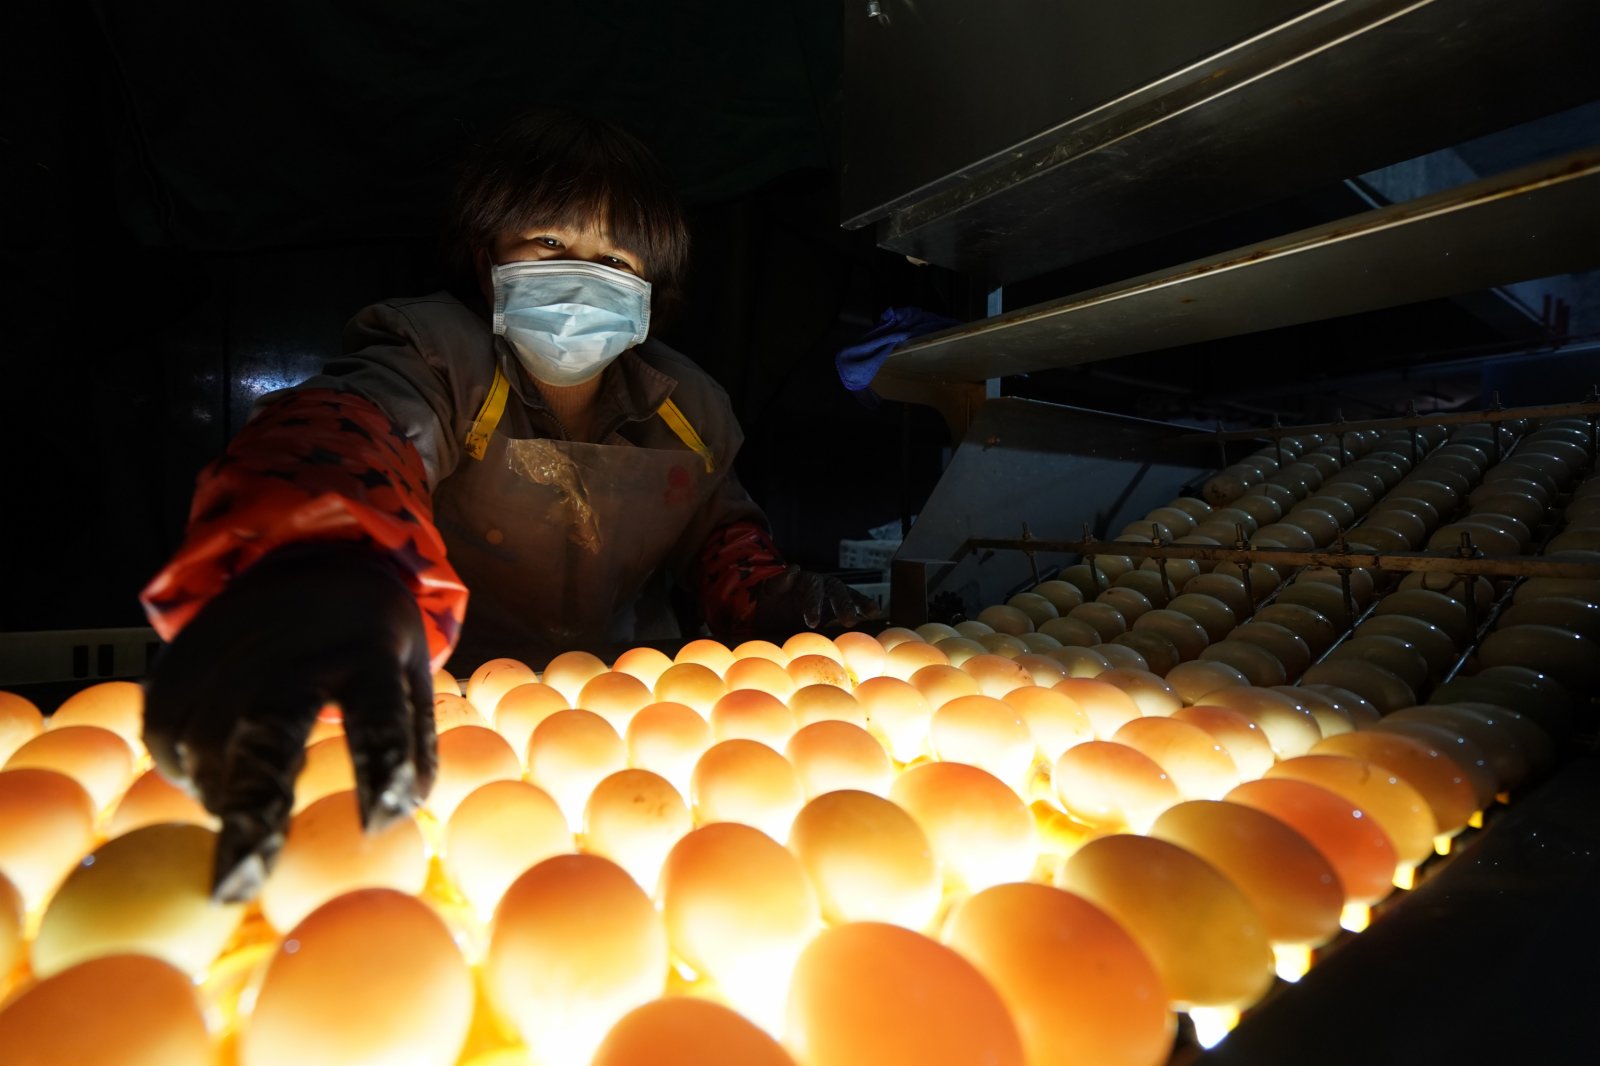 江蘇高郵鴨集團的工作人員在生產流水線上對鴨蛋進行光檢作業（2020年4月15日攝）。「高郵鴨蛋」是江蘇高郵的特色農業名片。近年來，當地在良種繁育、生態養殖、產品加工等方面加大力度，推動高郵鴨蛋品牌化建設，讓小鴨蛋成為帶動農戶致富的大產業。